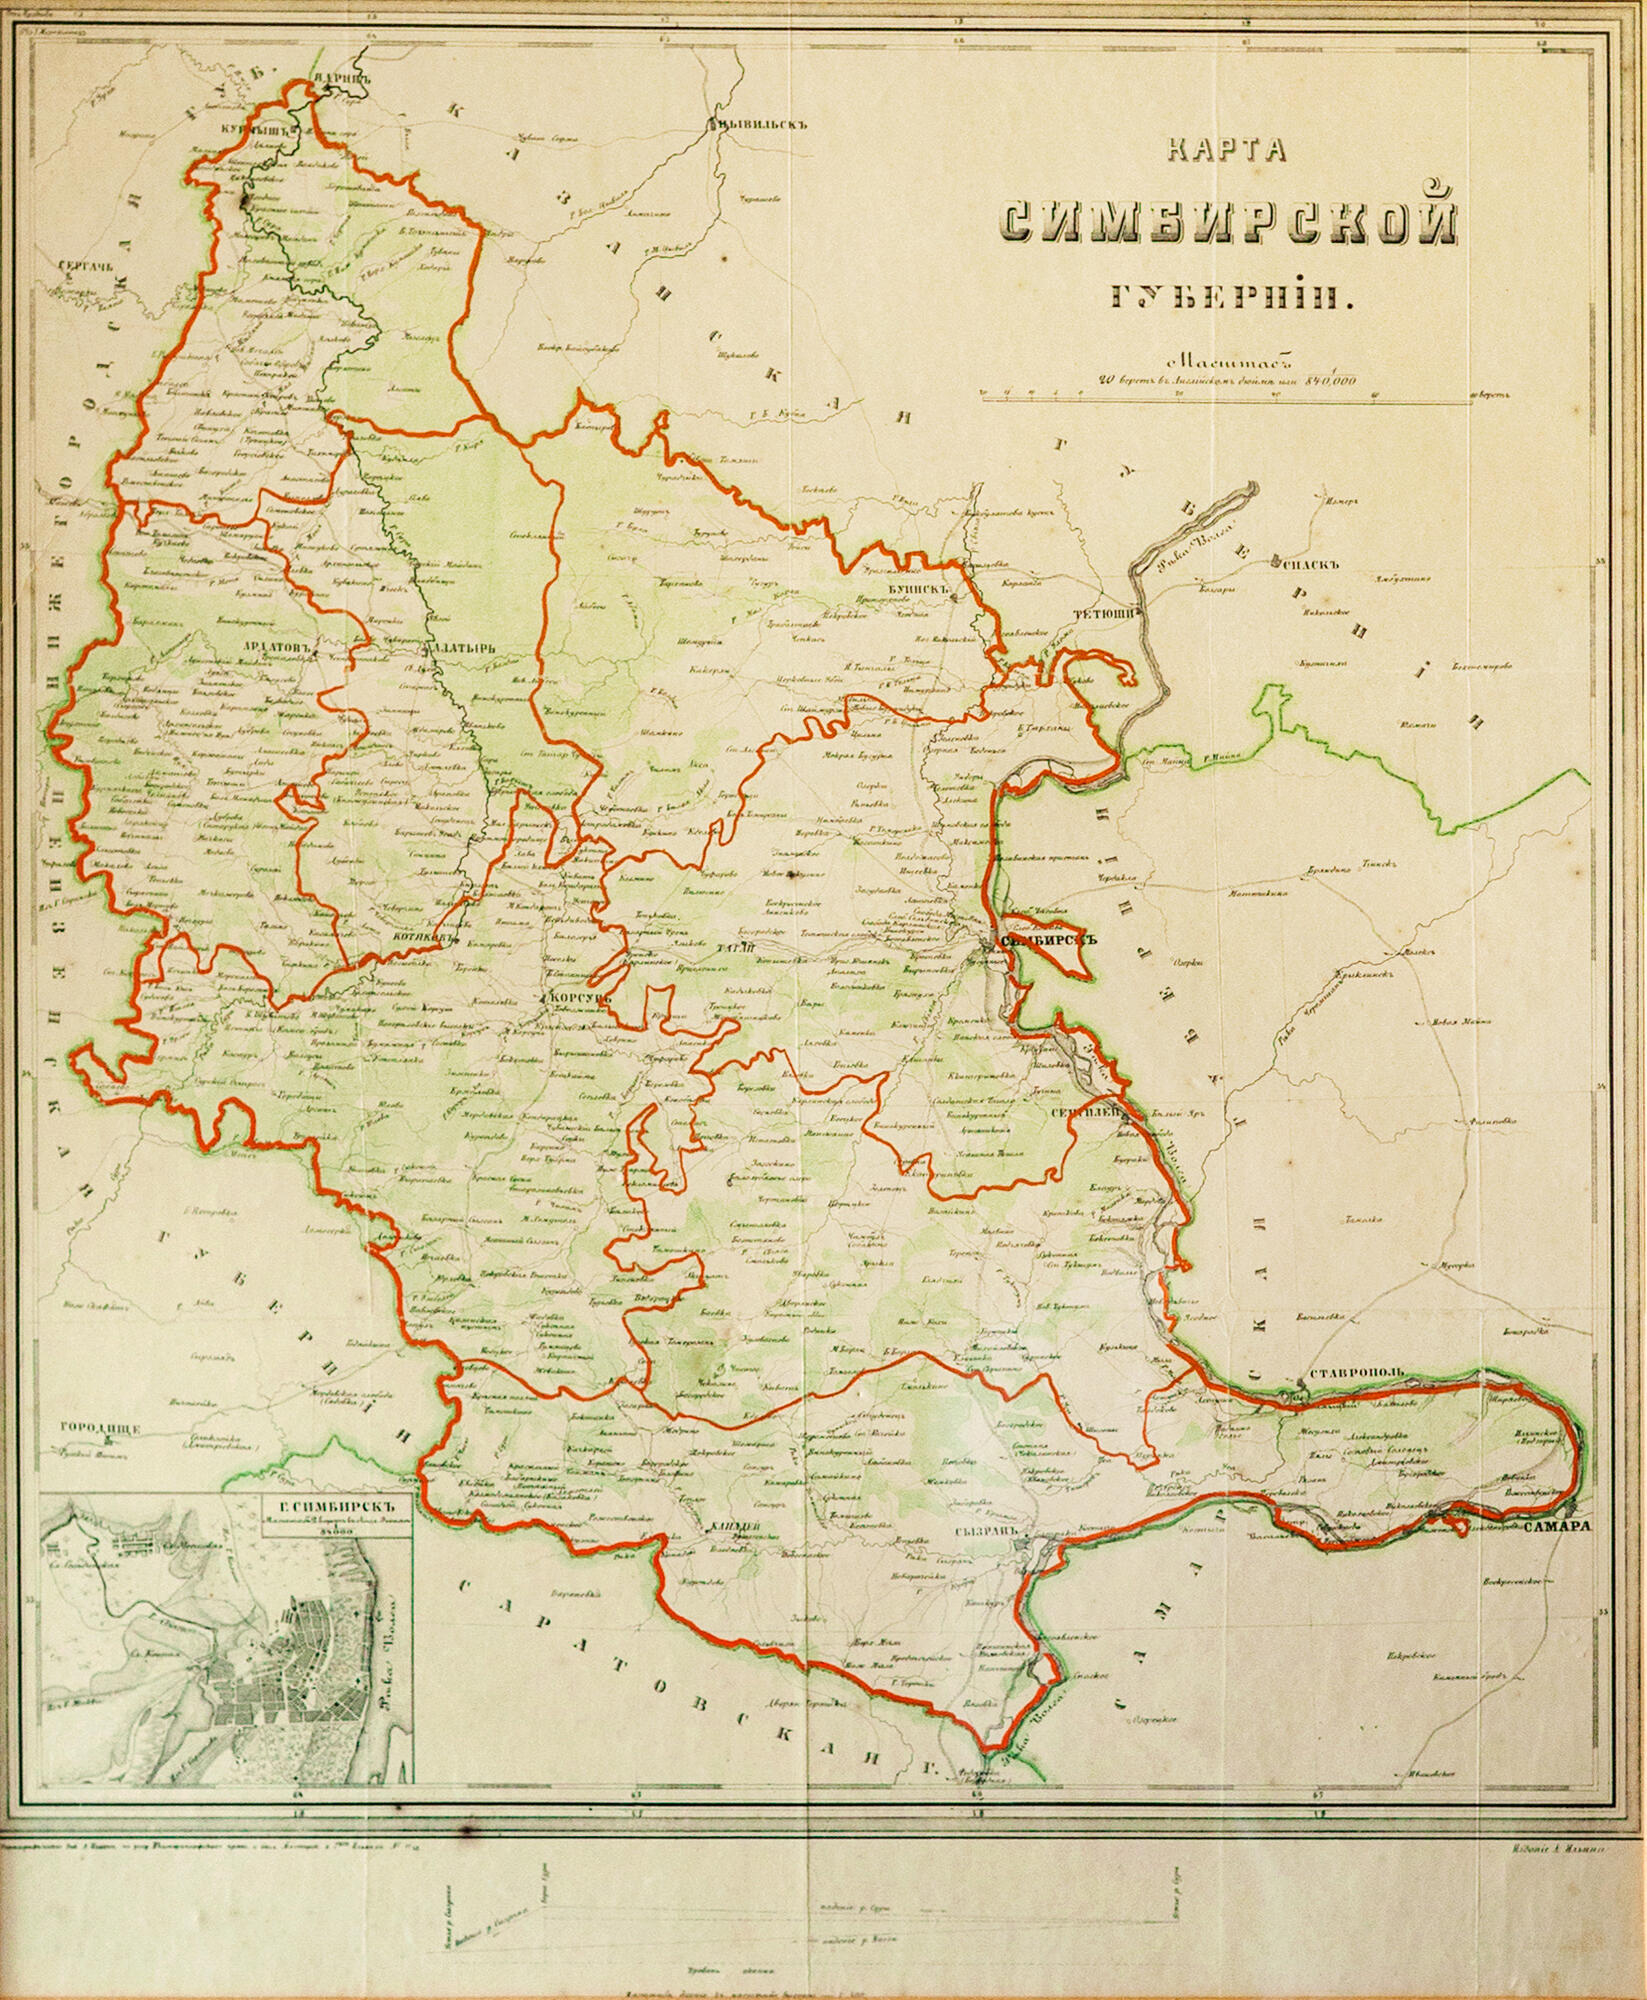 Переименование симбирской губернии в ульяновскую